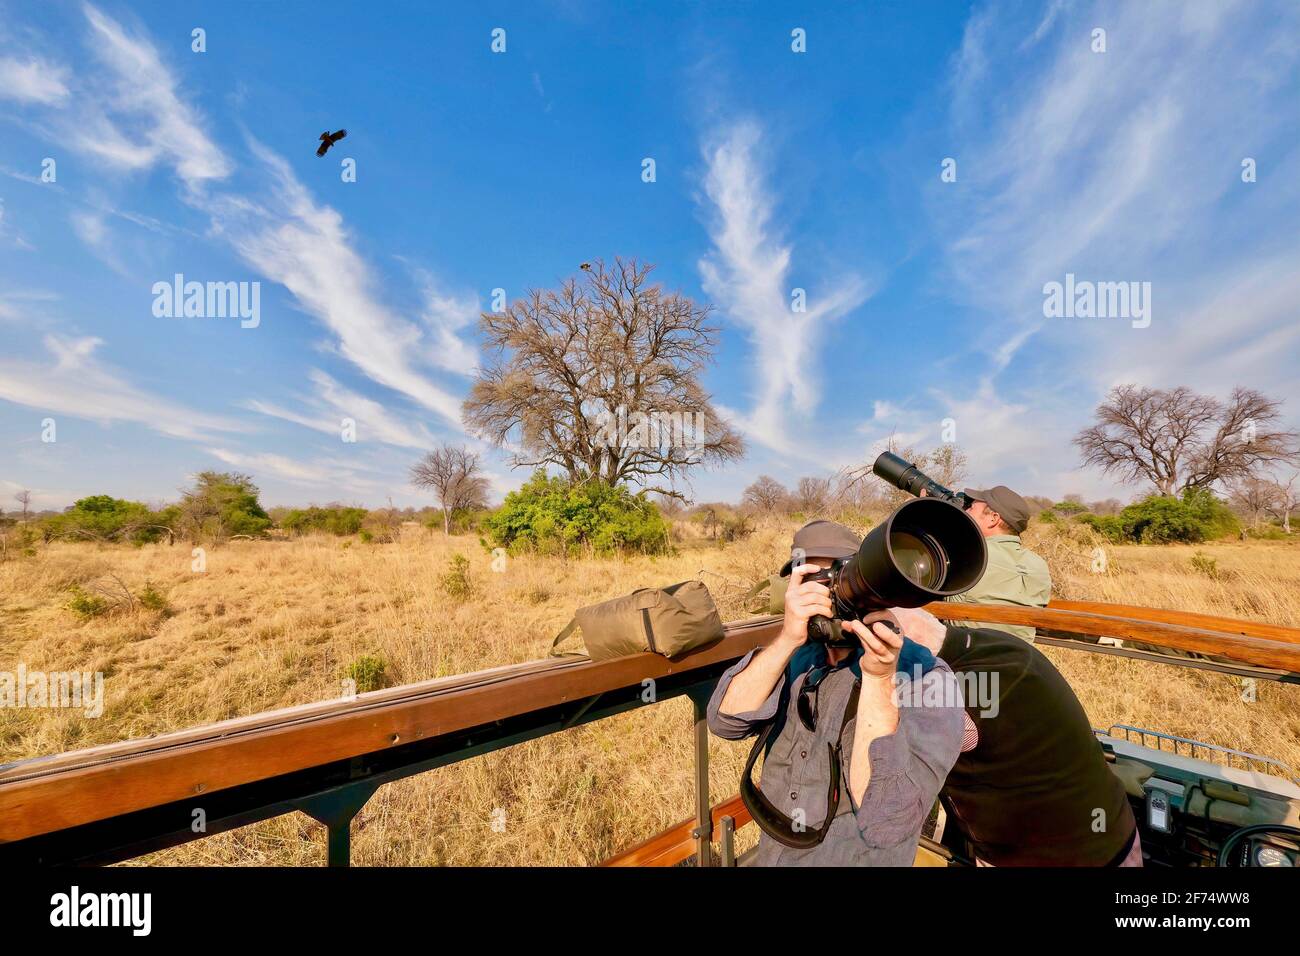 2Moremi Game Reserve, Botswana - 28 settembre 2014. Gli ospiti in un safari fotografico fotografano uccelli rapaci nel cielo da un veicolo aperto. Foto Stock